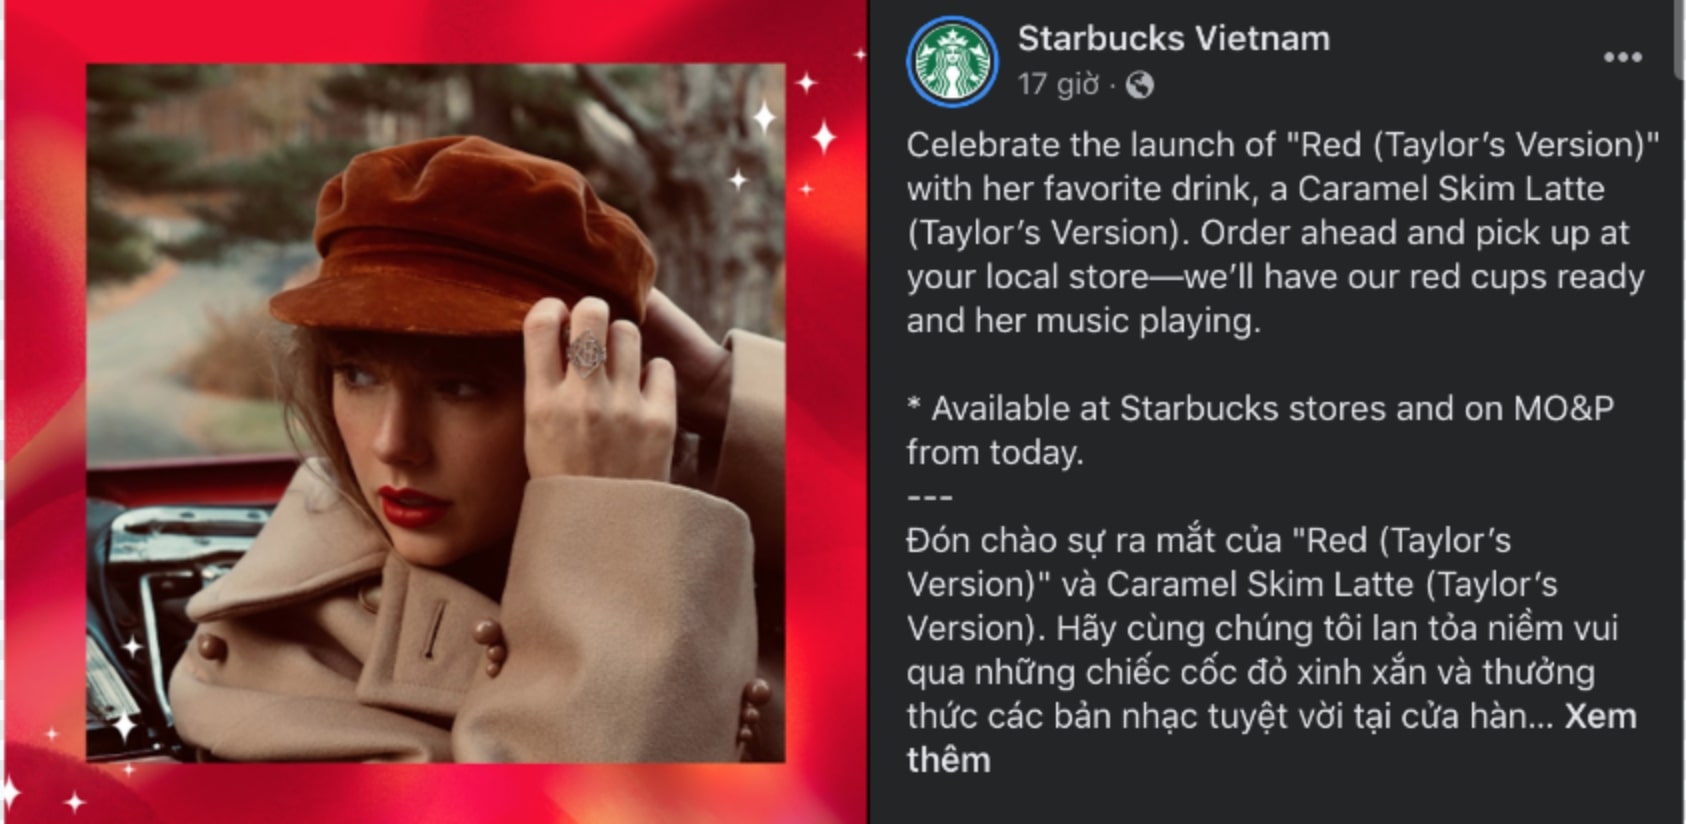 Dòng thông báo của Starbucks Việt Nam khiến nhiều Swifties đứng ngồi không yên. Ảnh: Starbucks Việt Nam.